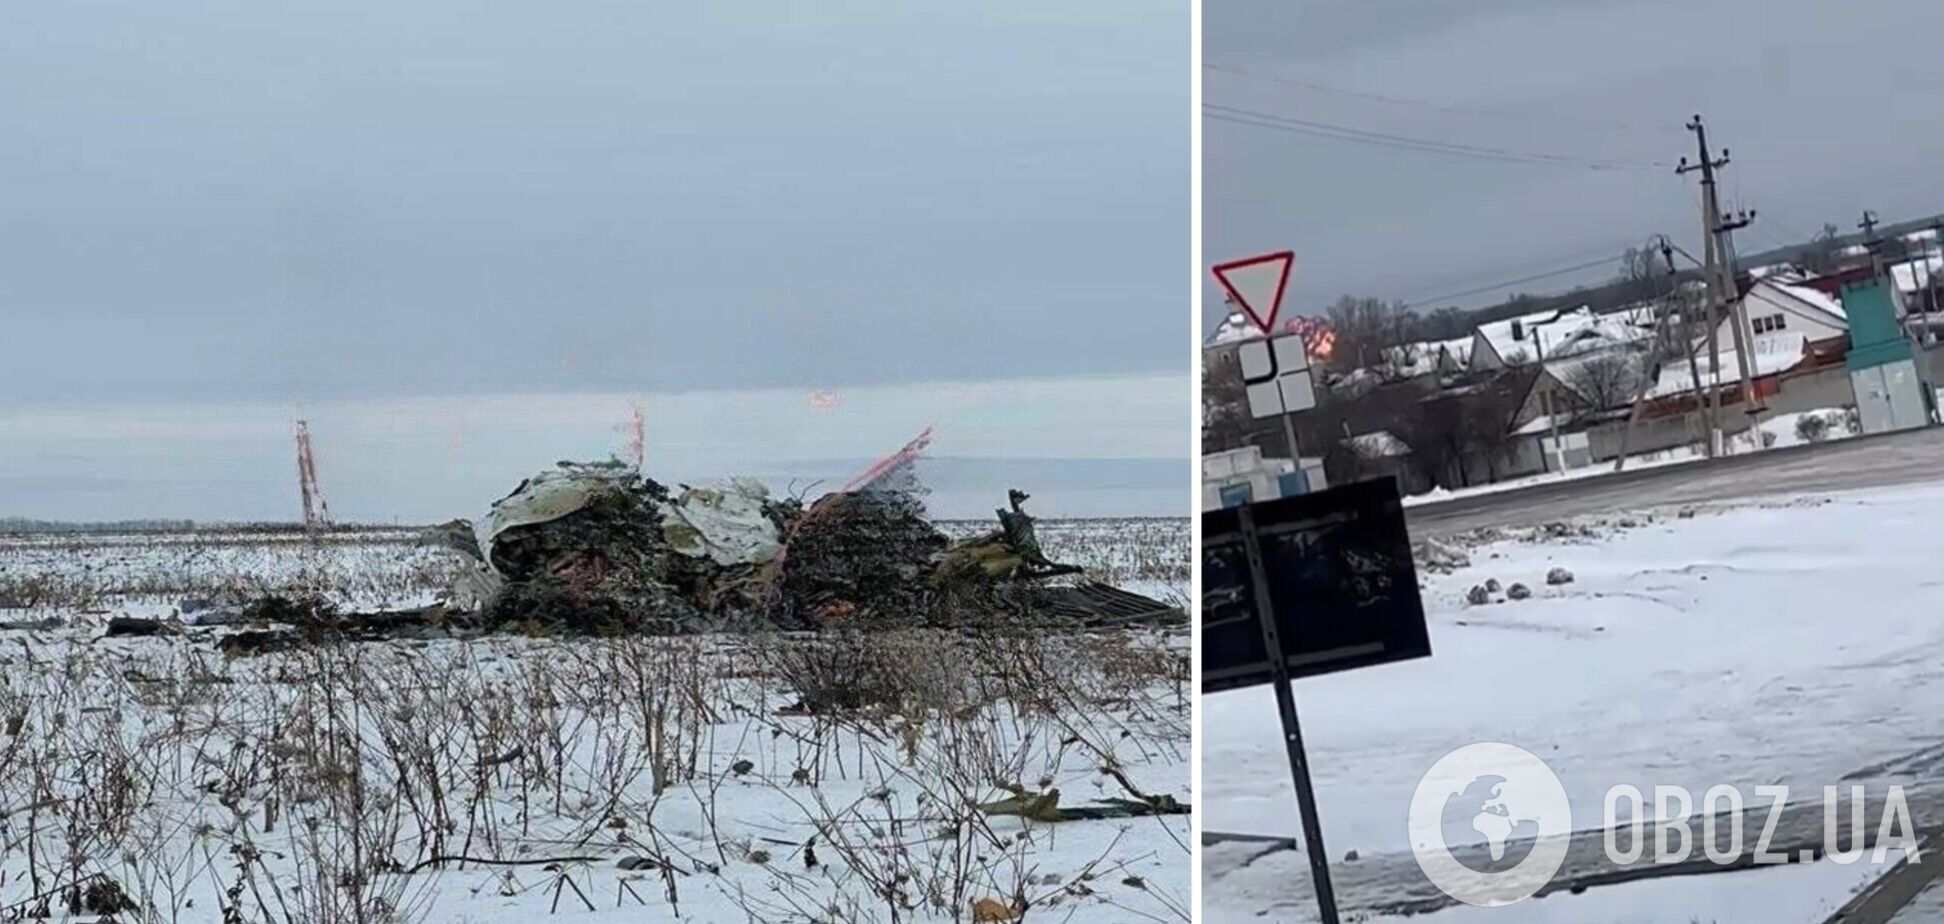 'Шел на взлет, а не приземление': Коваленко разоблачил ложь РФ о катастрофе Ил-76 и указал на важные нюансы